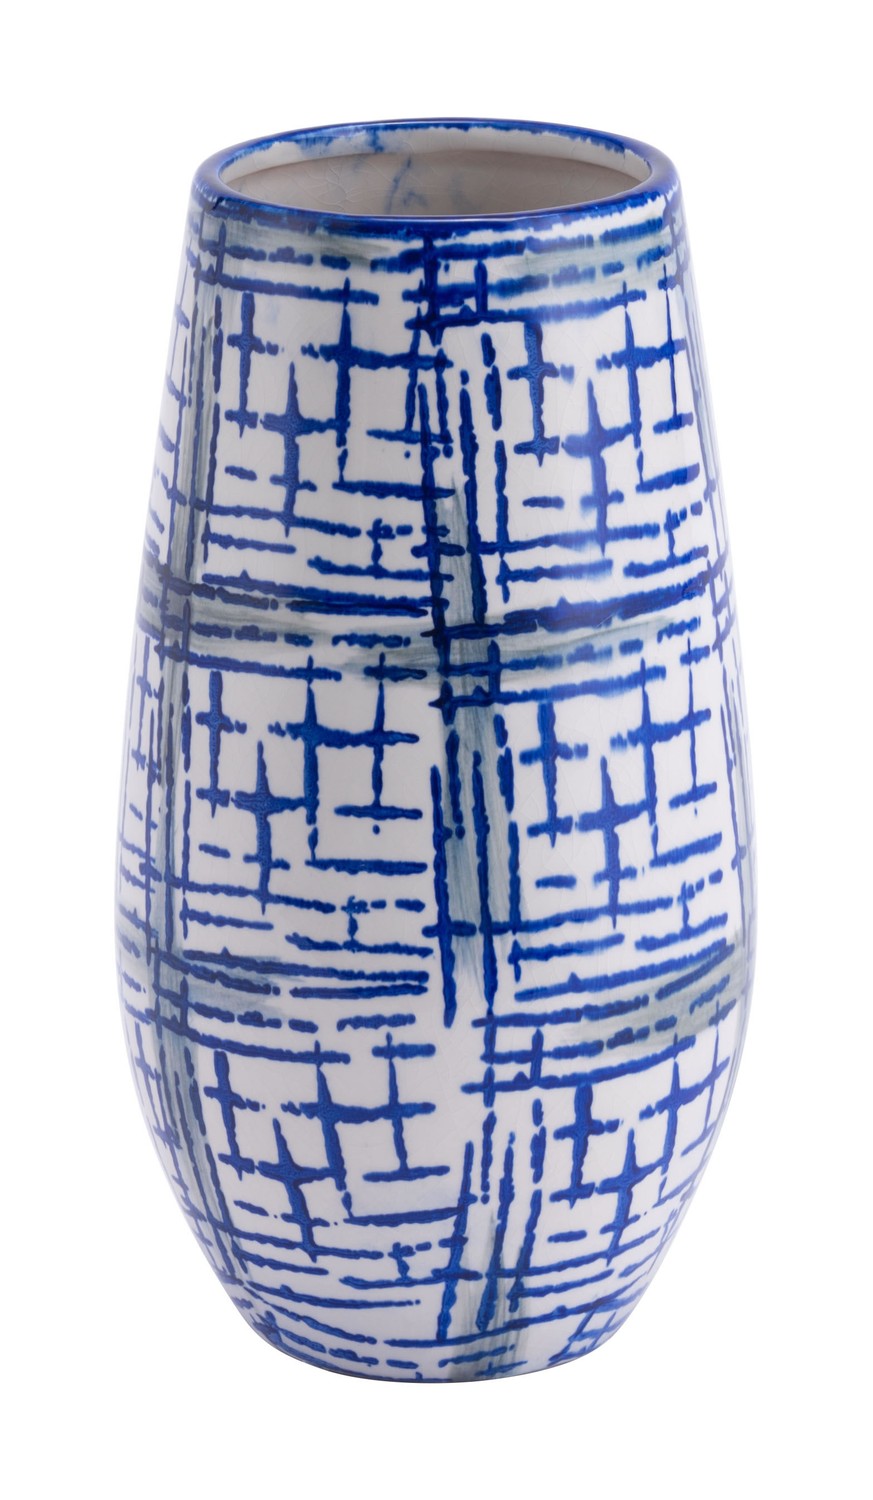 6.5" x 6.5" x 12.2" Blue & White, Ceramic, Medium Vase